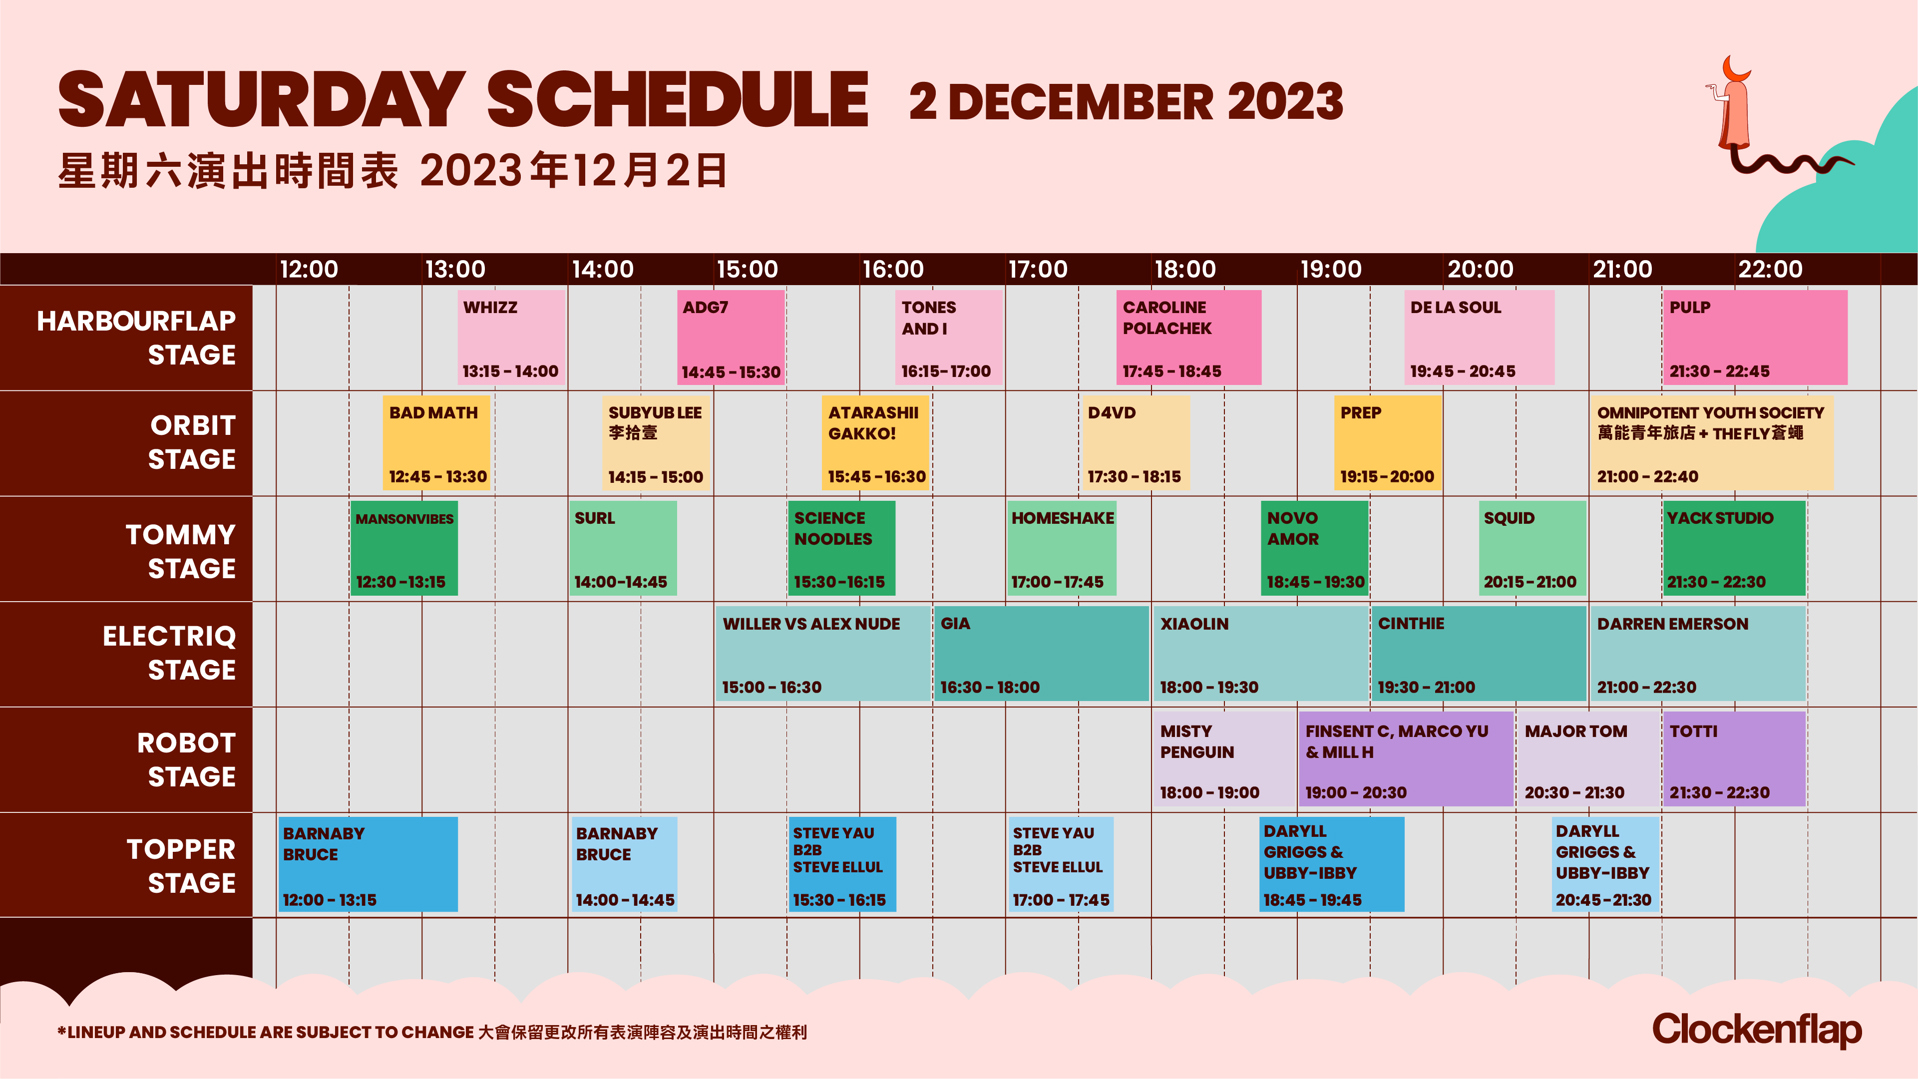 saturday schedule clockenflap december 2023